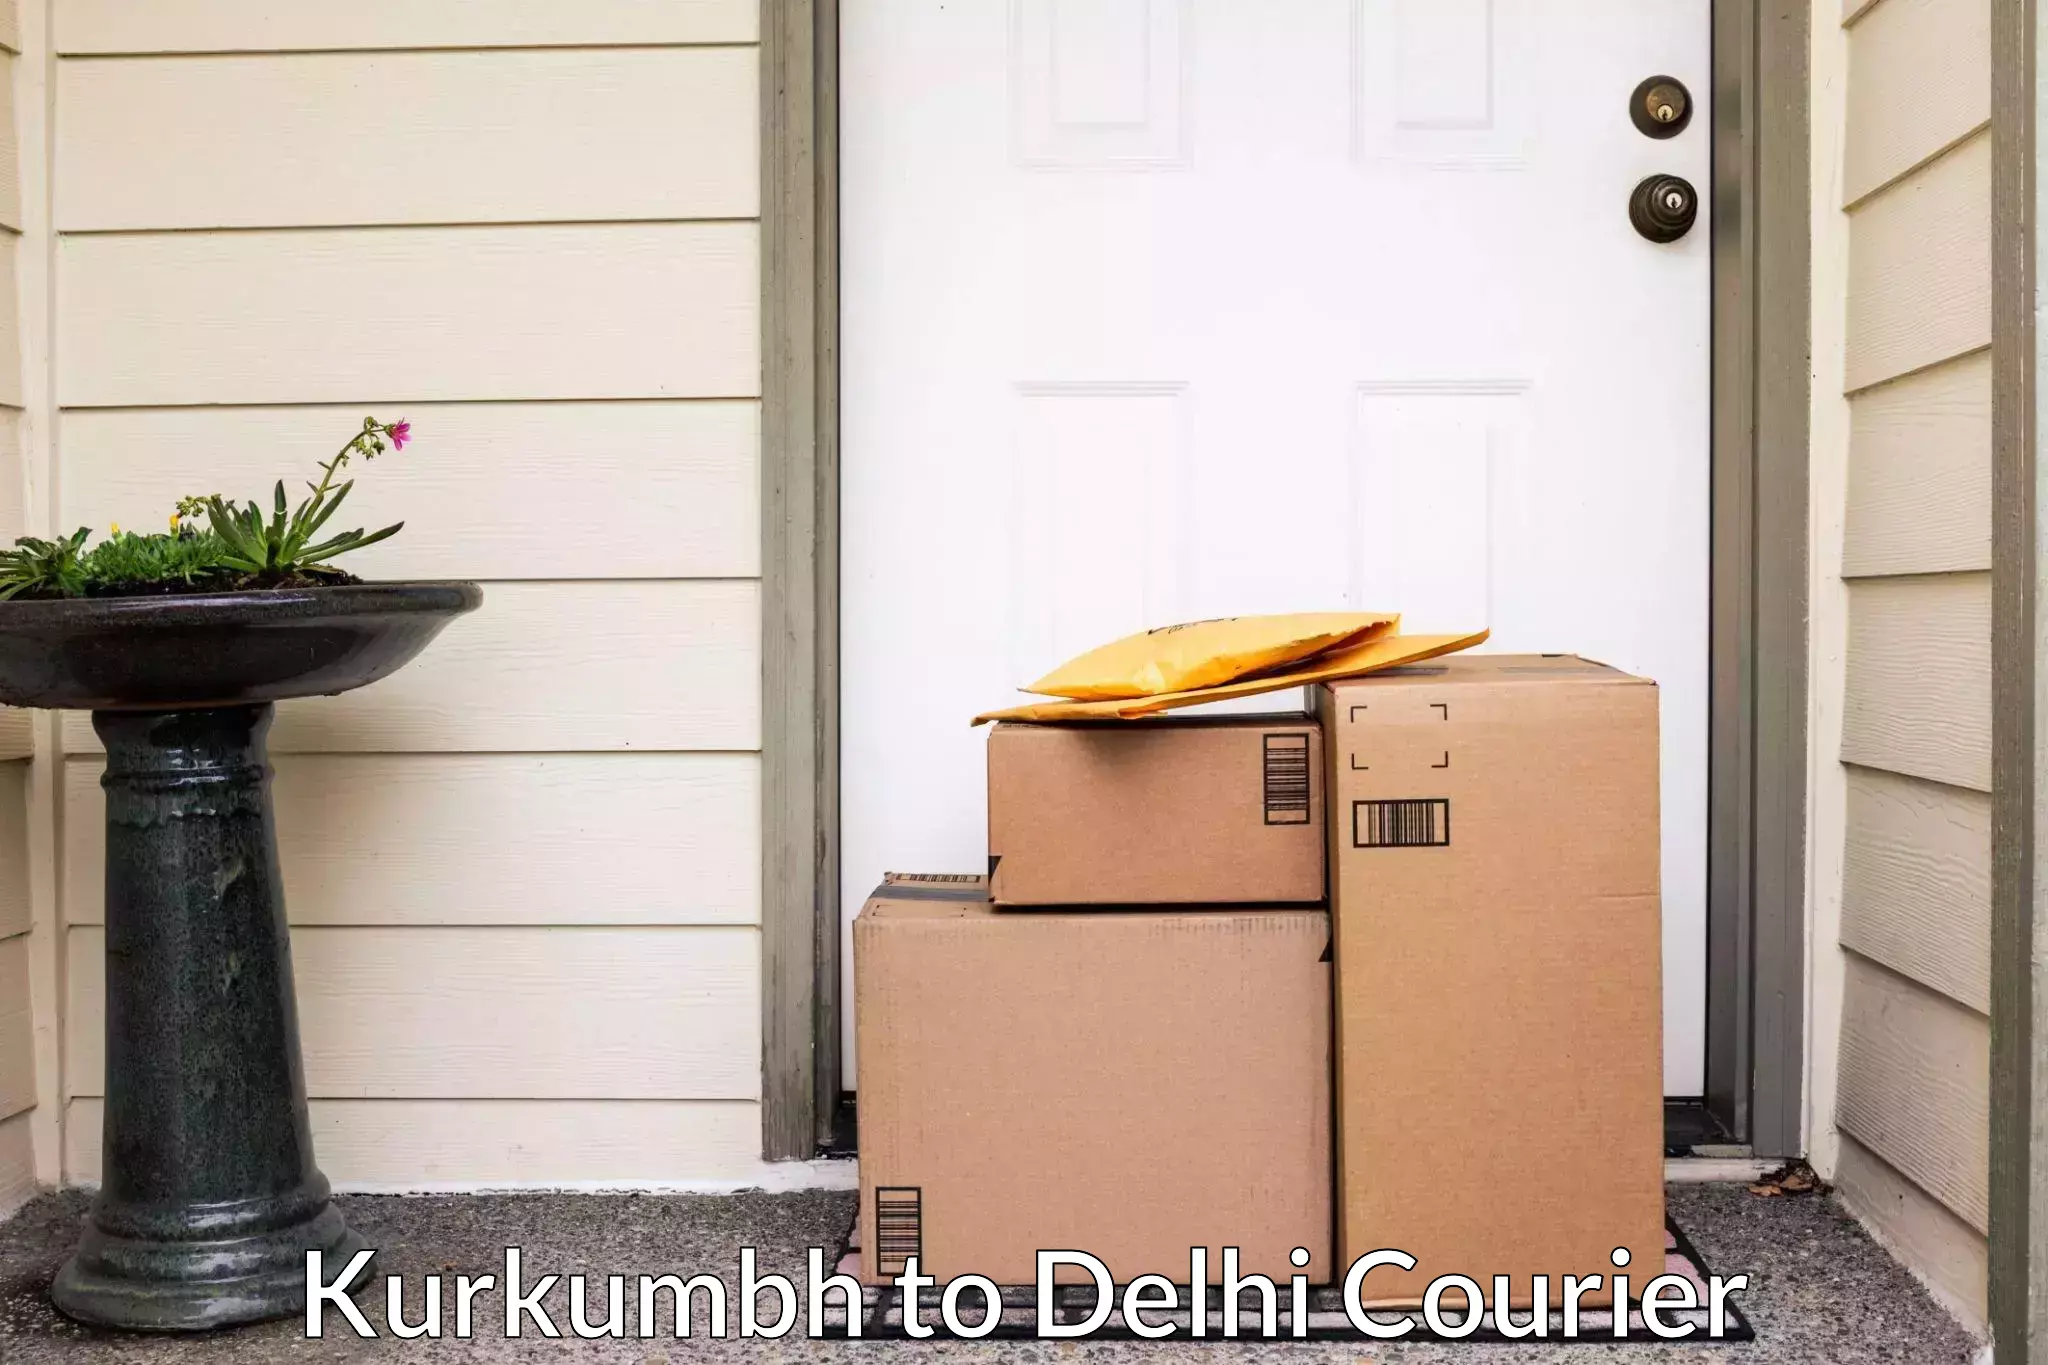 Professional movers and packers Kurkumbh to IIT Delhi